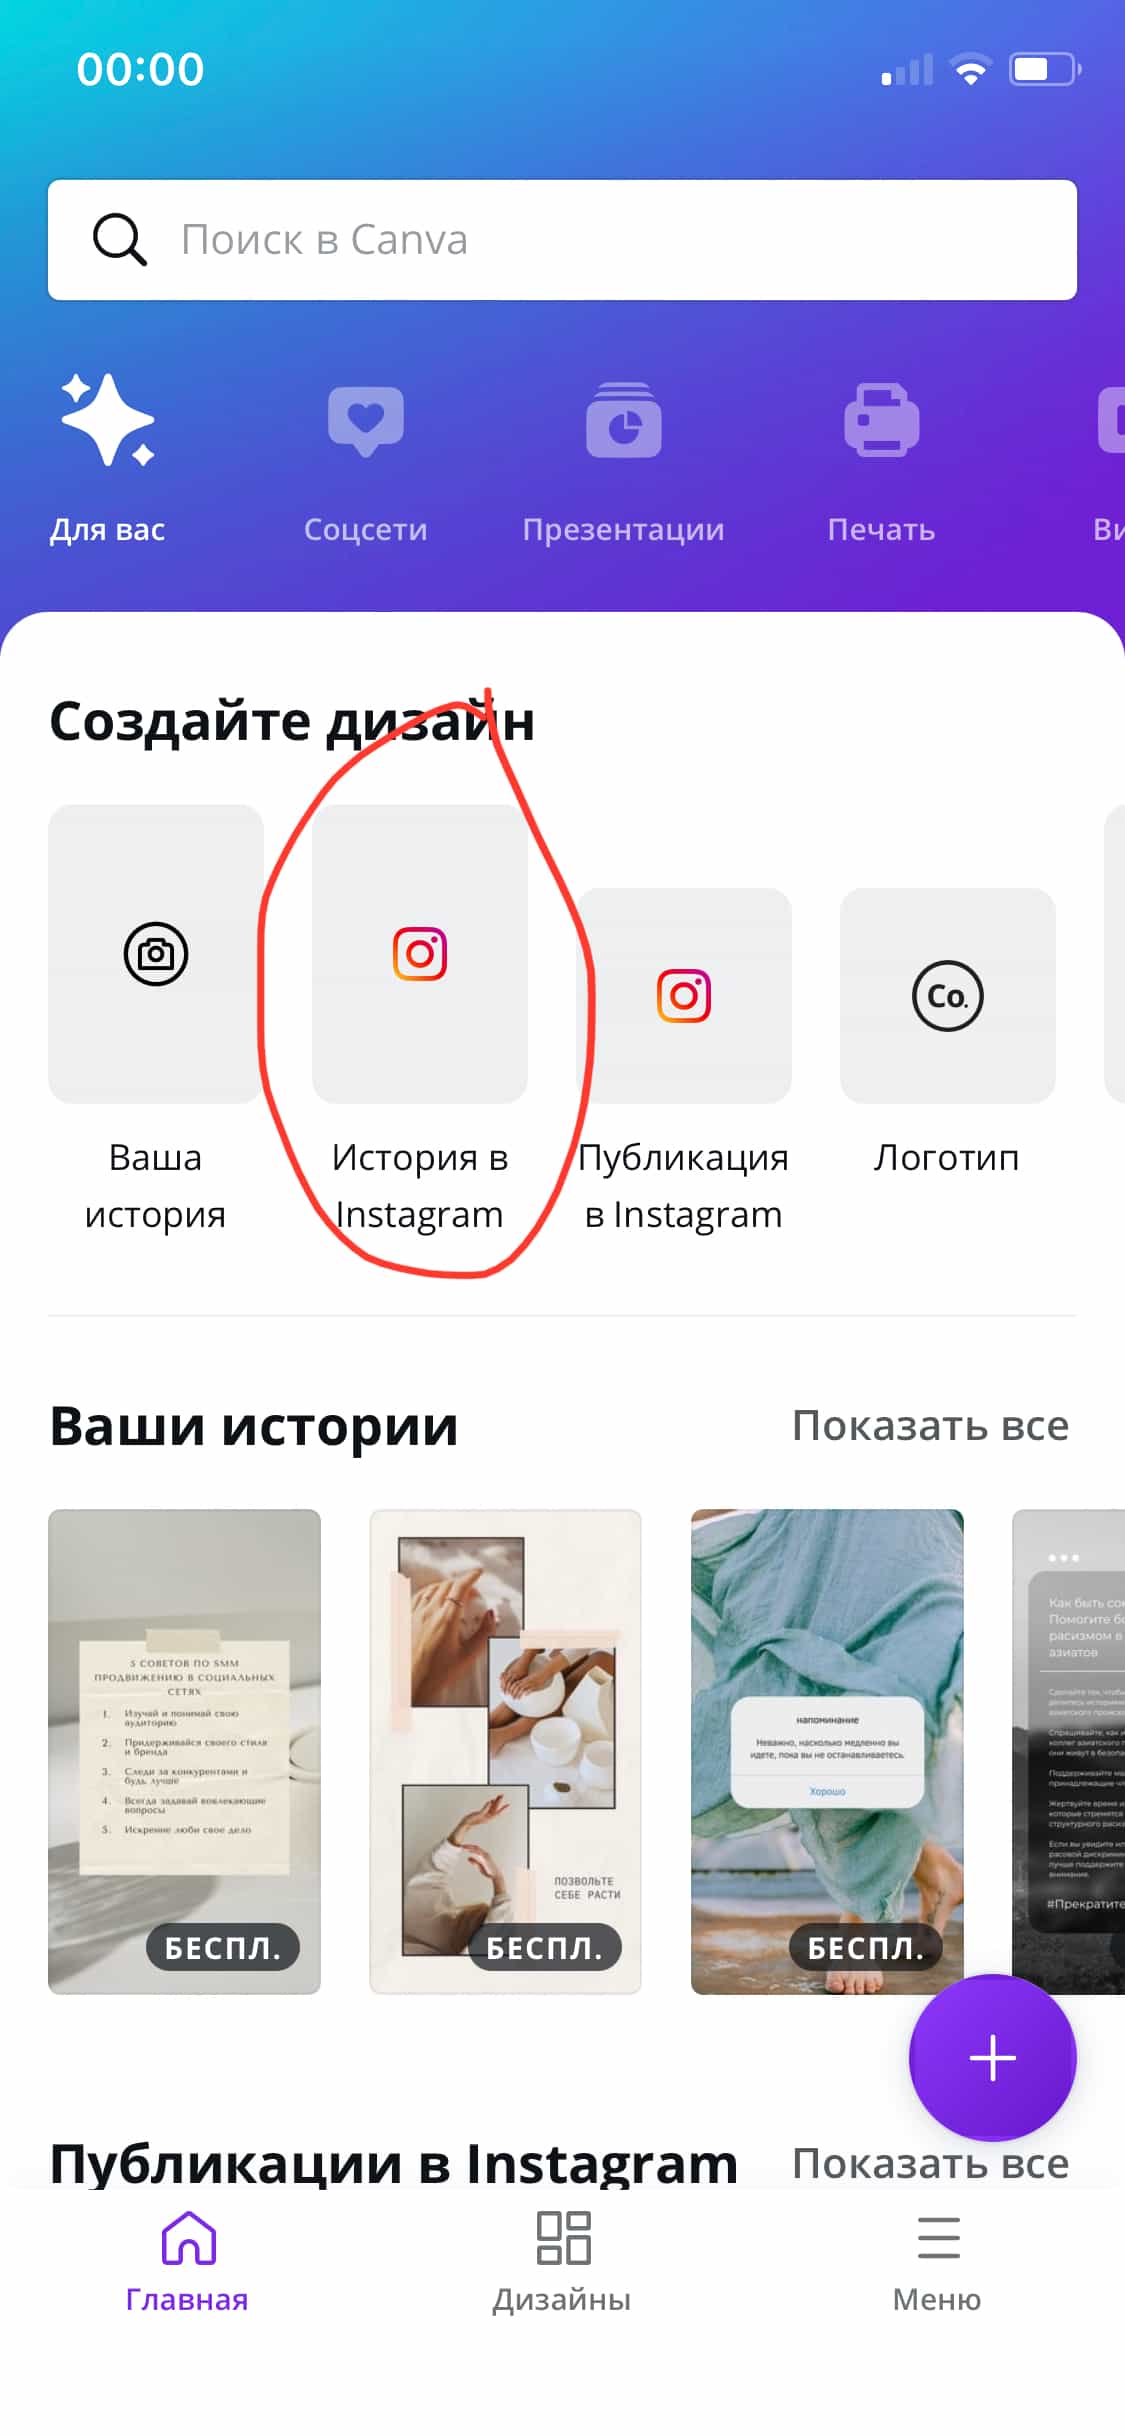 Шаг 1. Откройте приложение, перейдите в раздел Соцсети и выберите «История в Instagram».